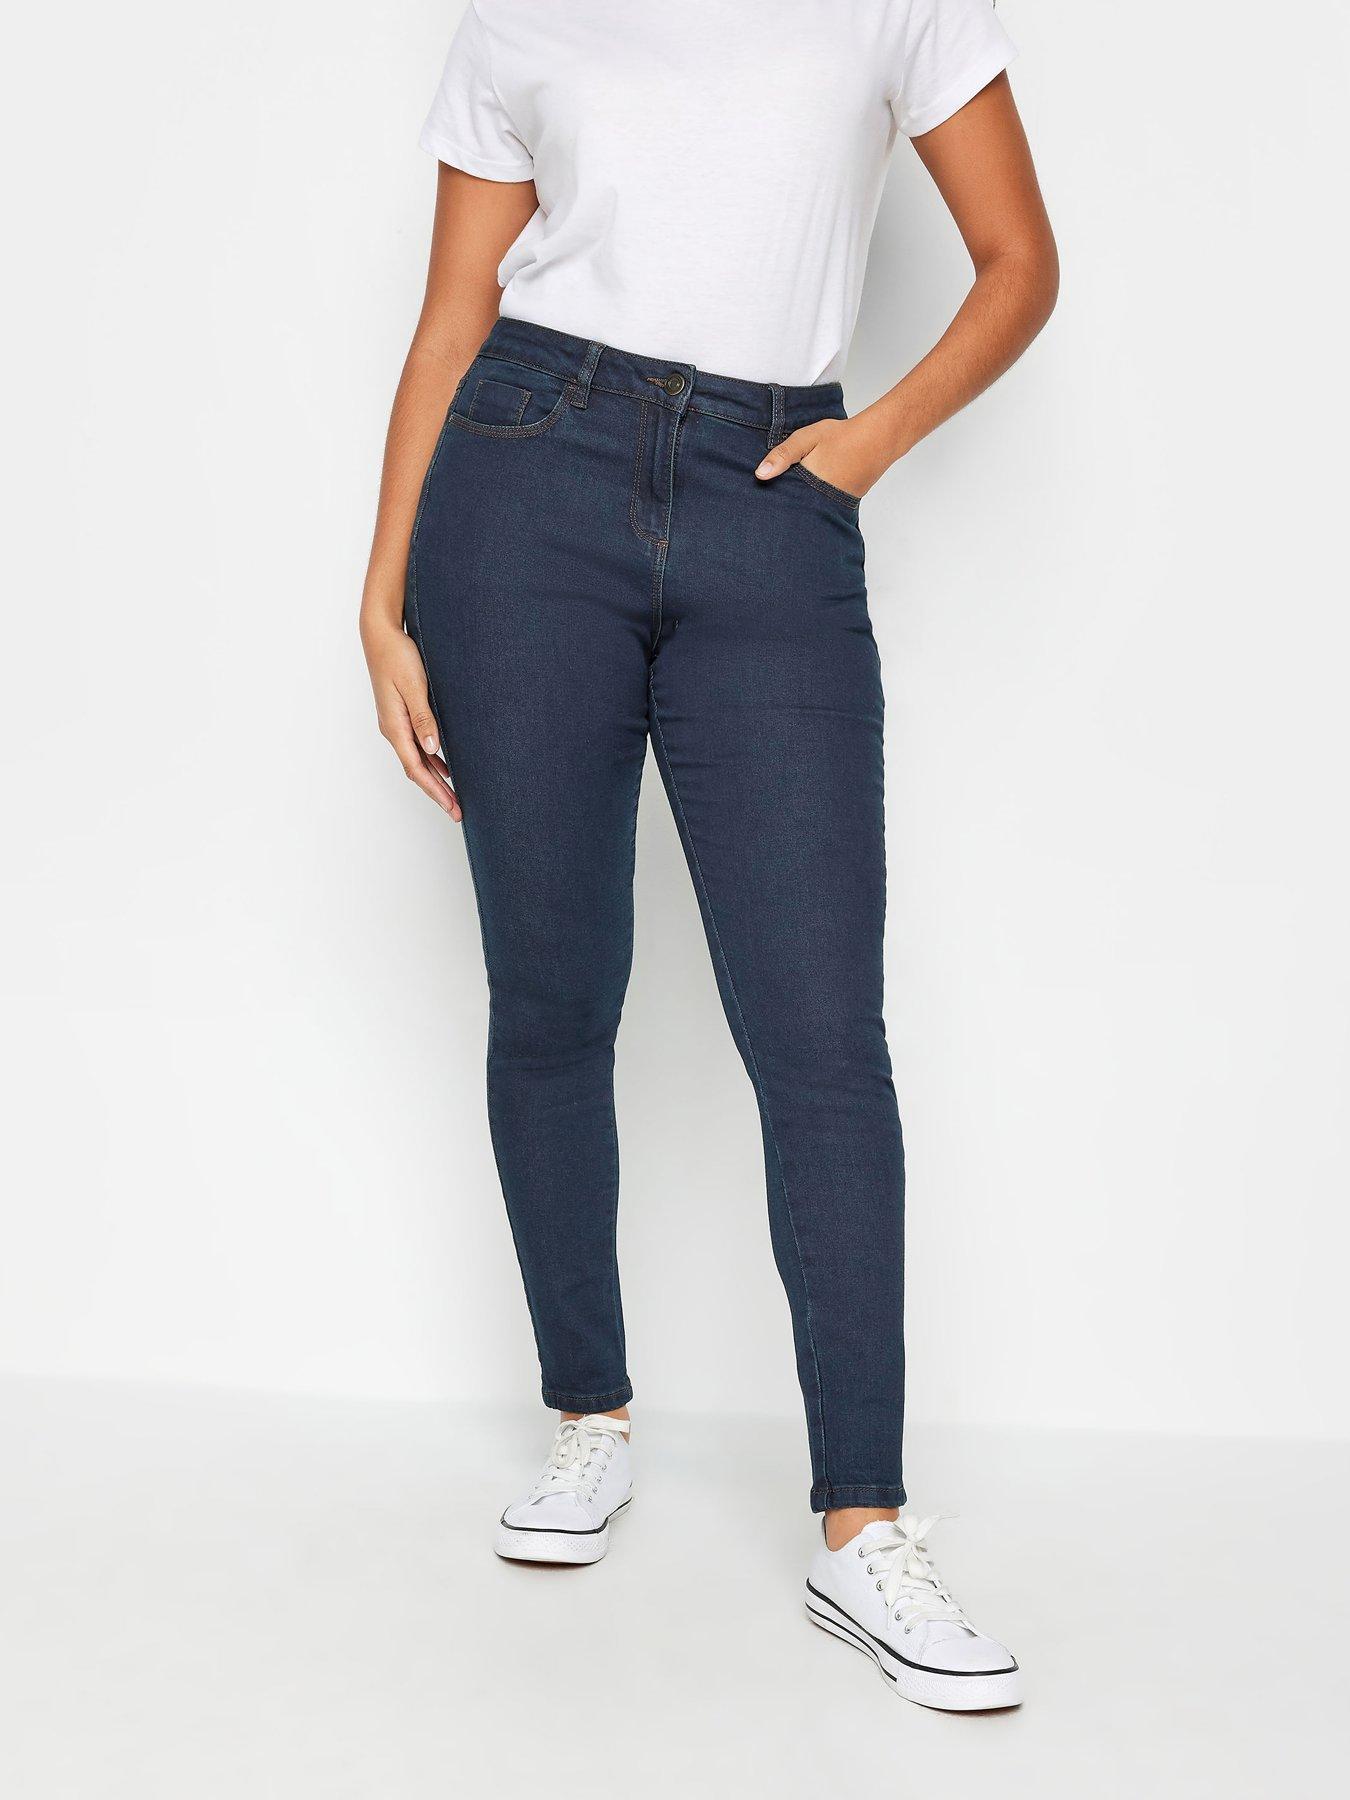 M&Co Petite Petite Indigo Skinny Jeans